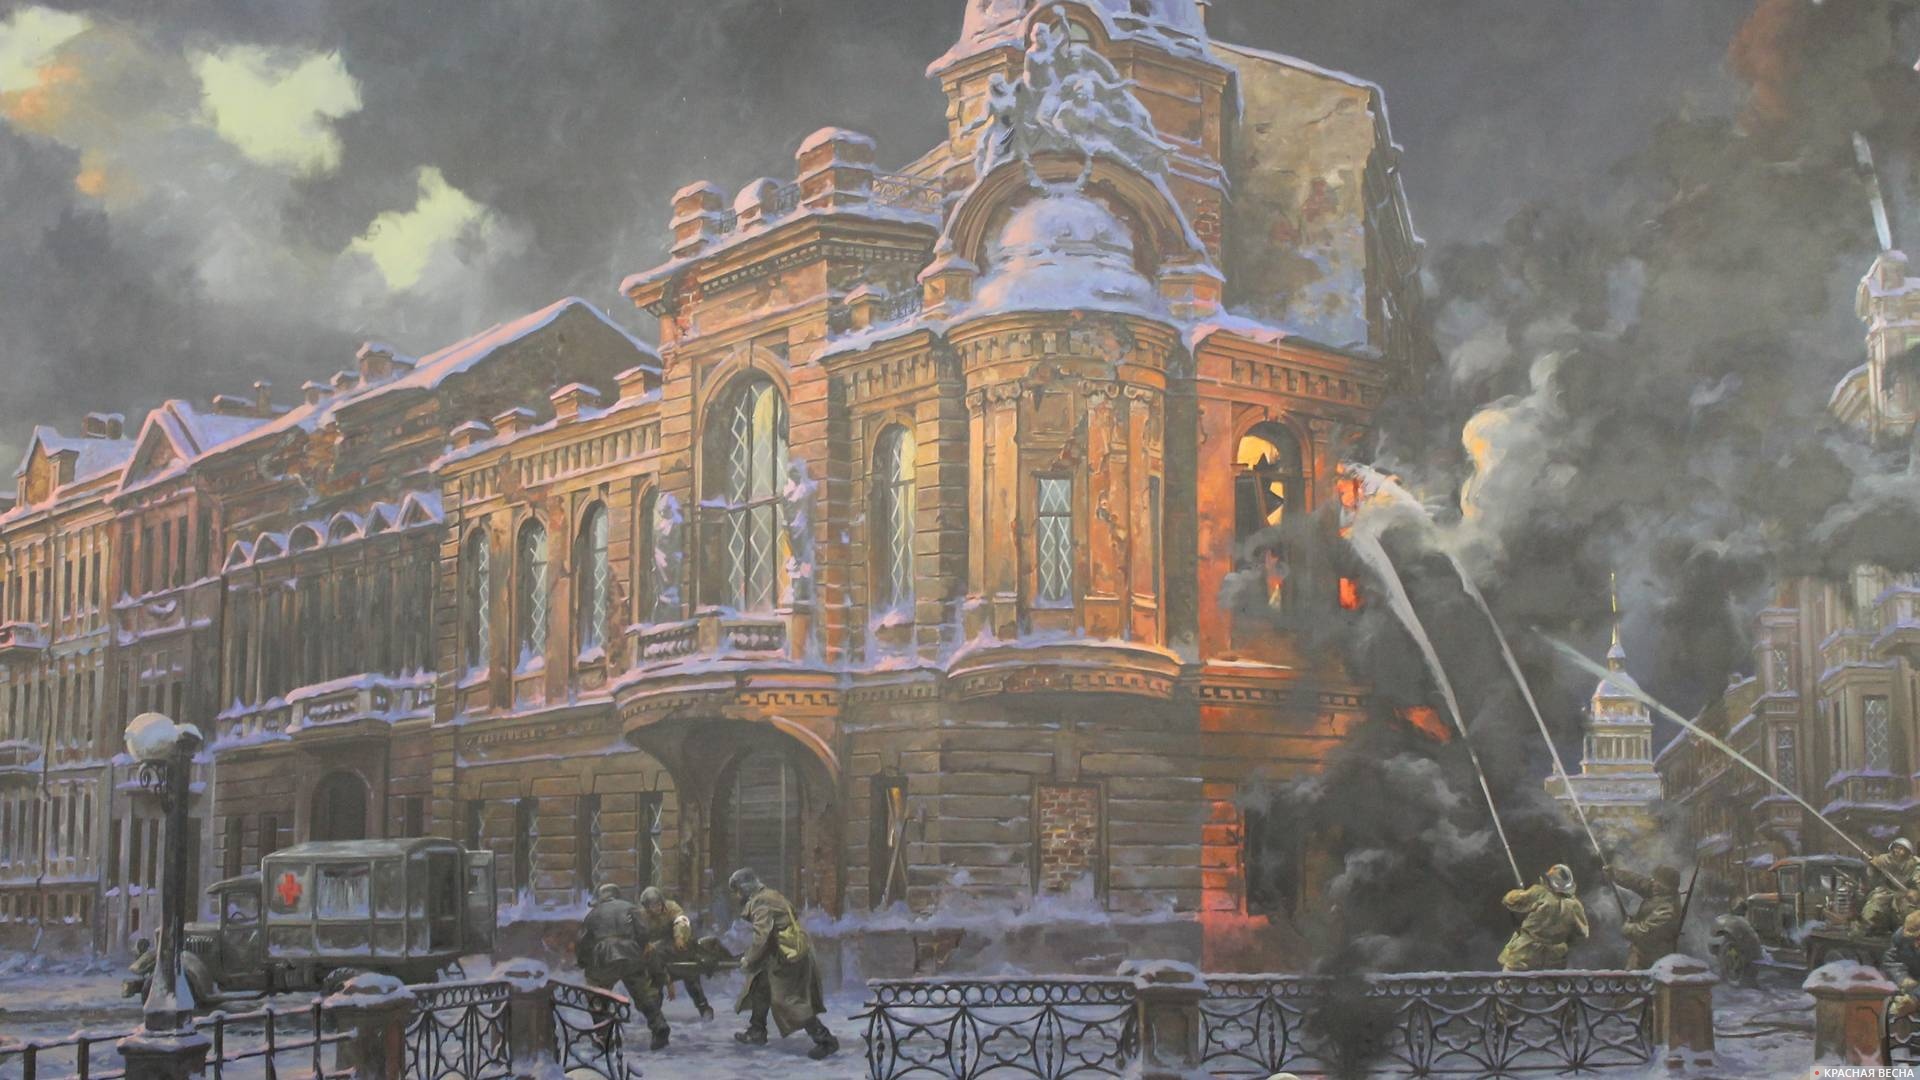 Тушение пожара. Фрагмент диорамы в Музее Победы на Поклонной горе в Москве